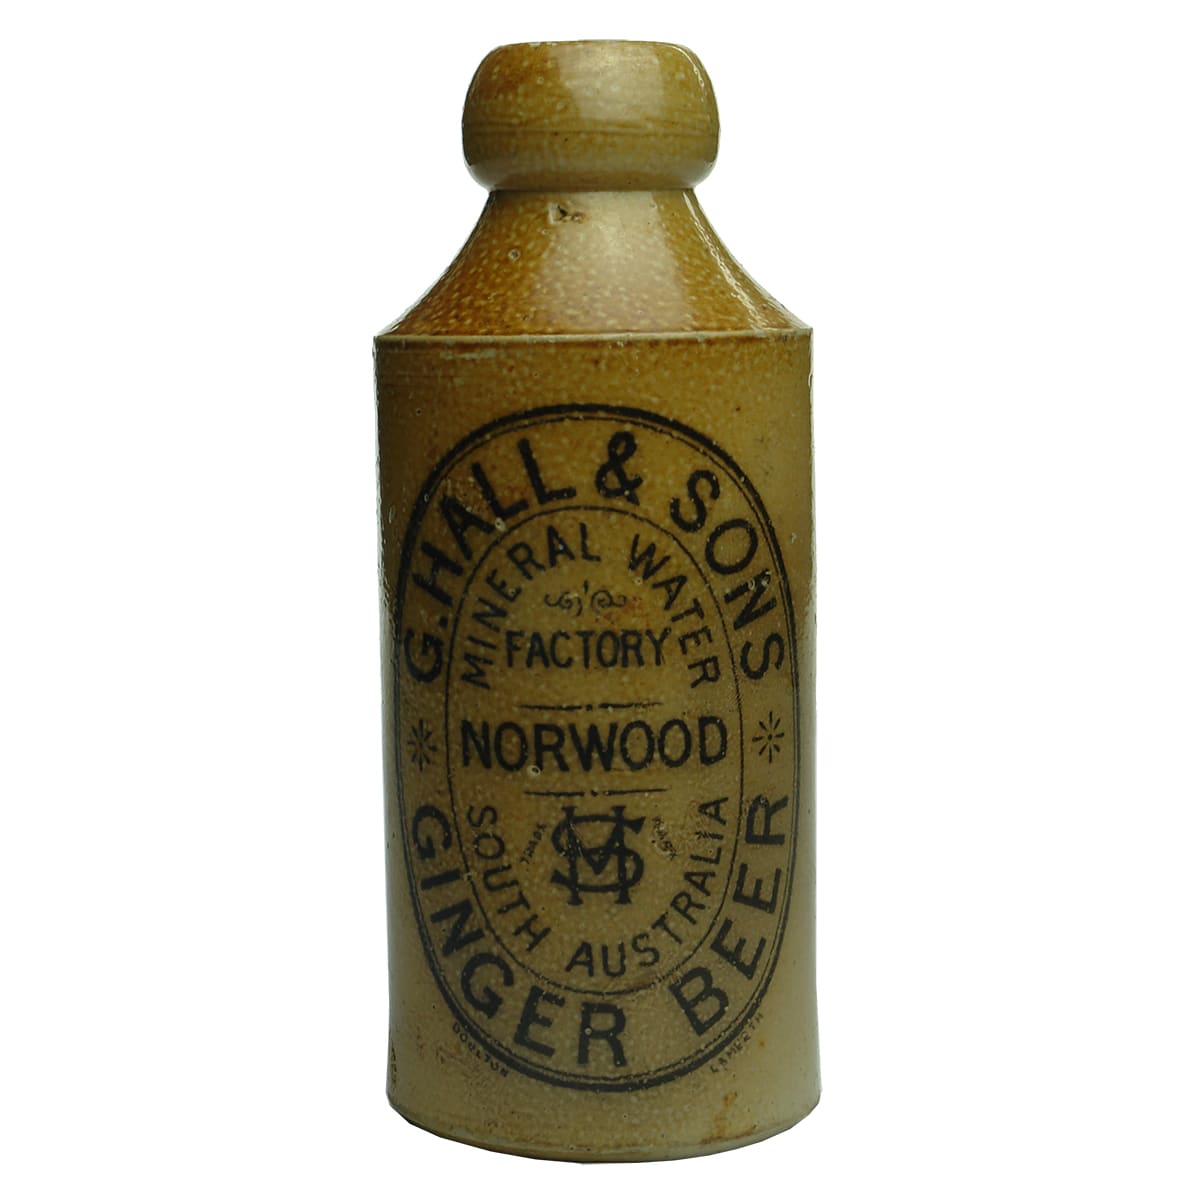 Ginger Beer. G. Hall & Sons, Norwood. Cork stopper. Salt Glaze.